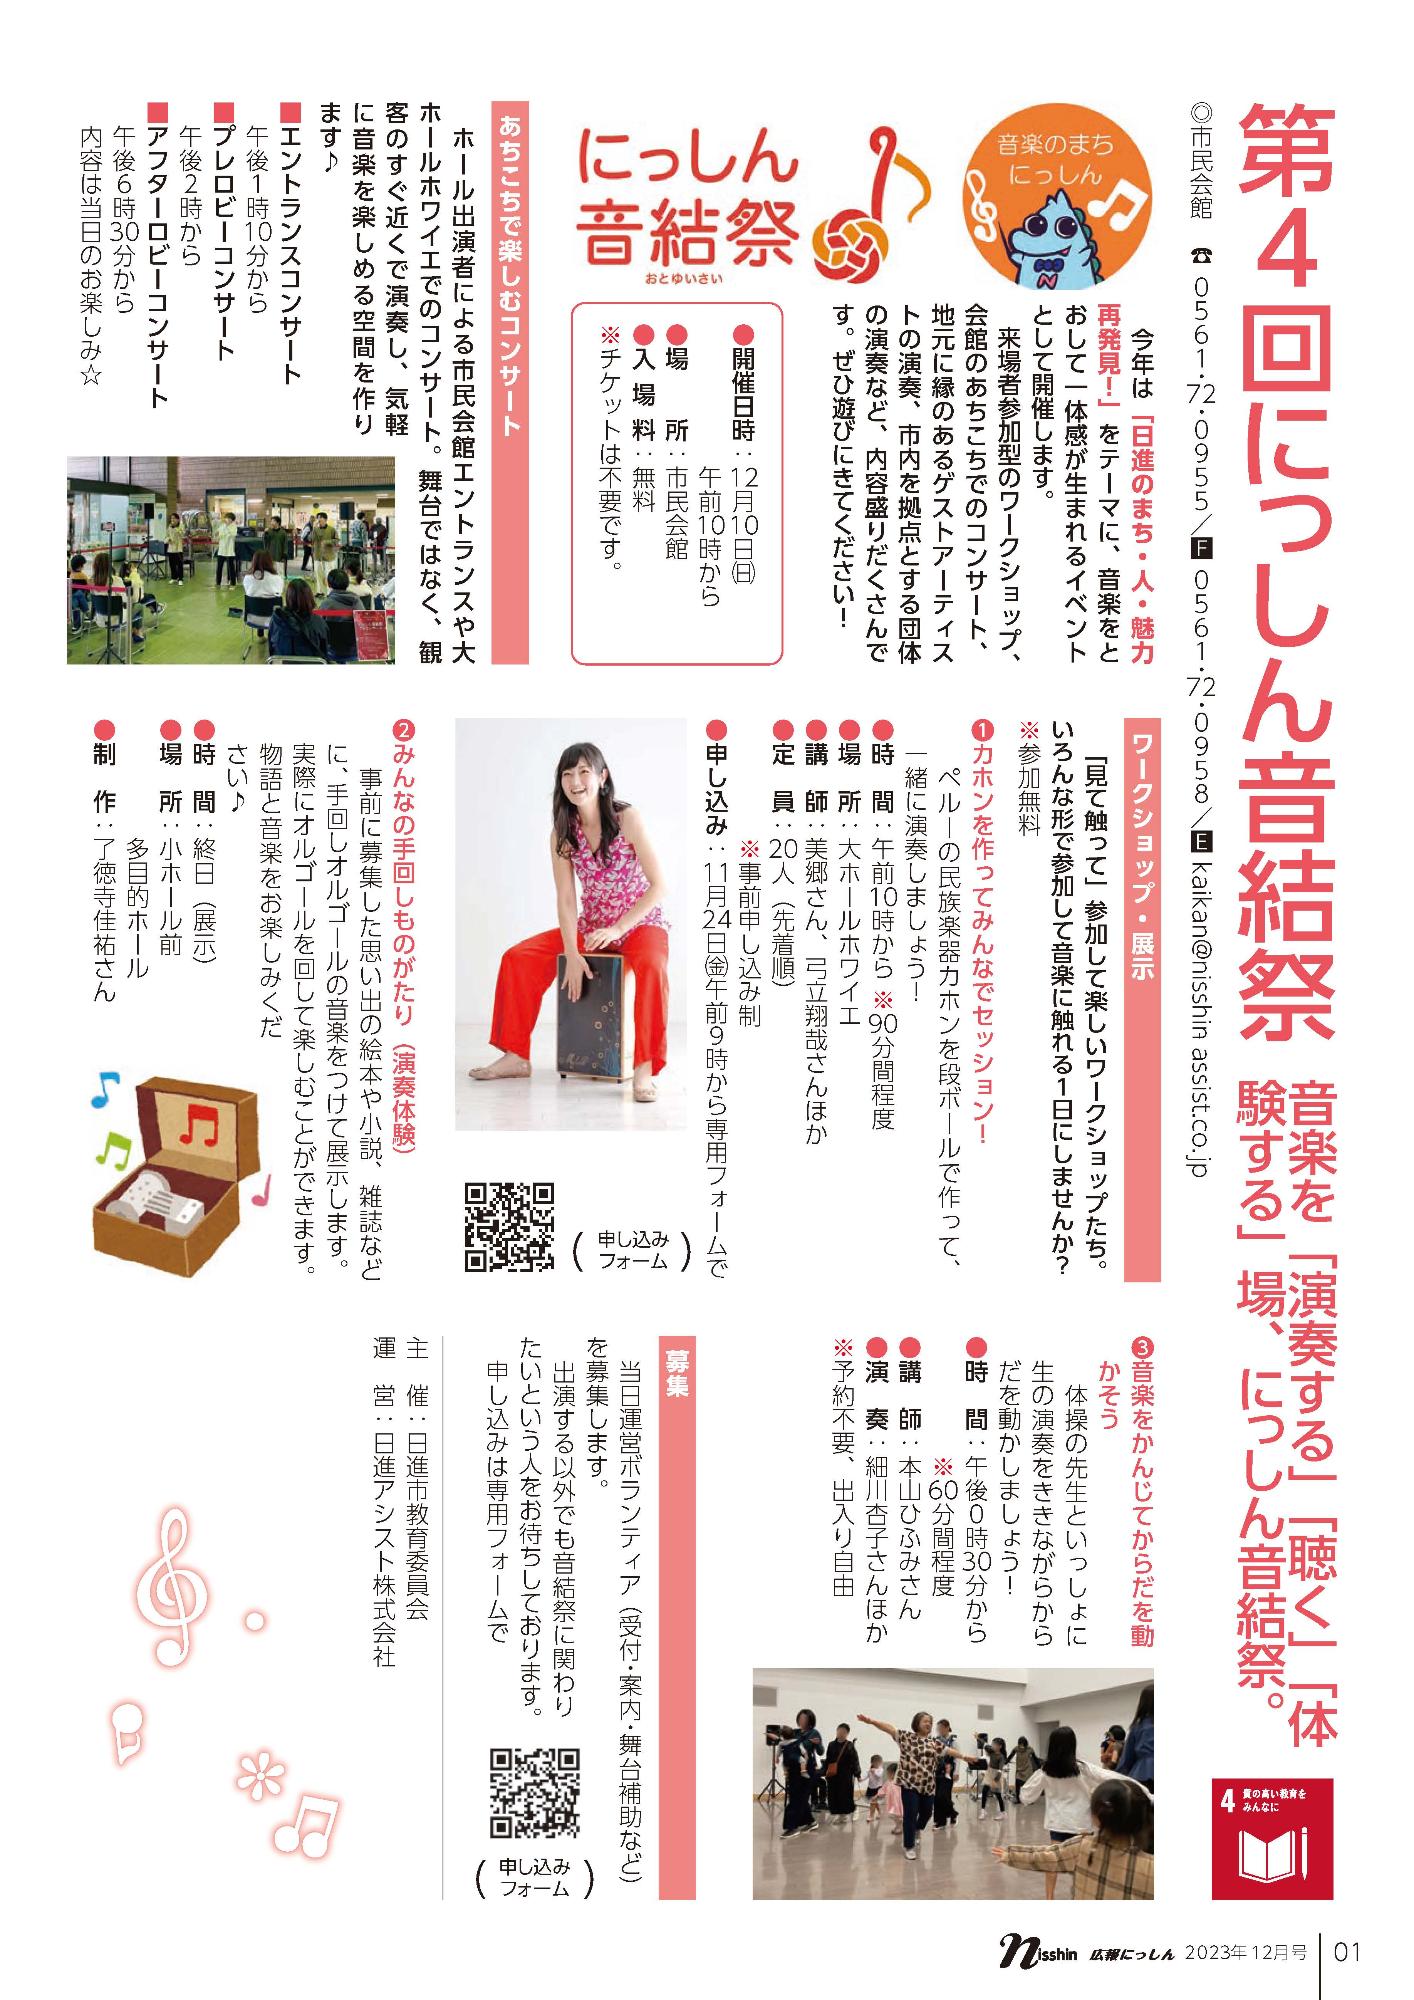 広報12月号にっしん音結祭ページ1